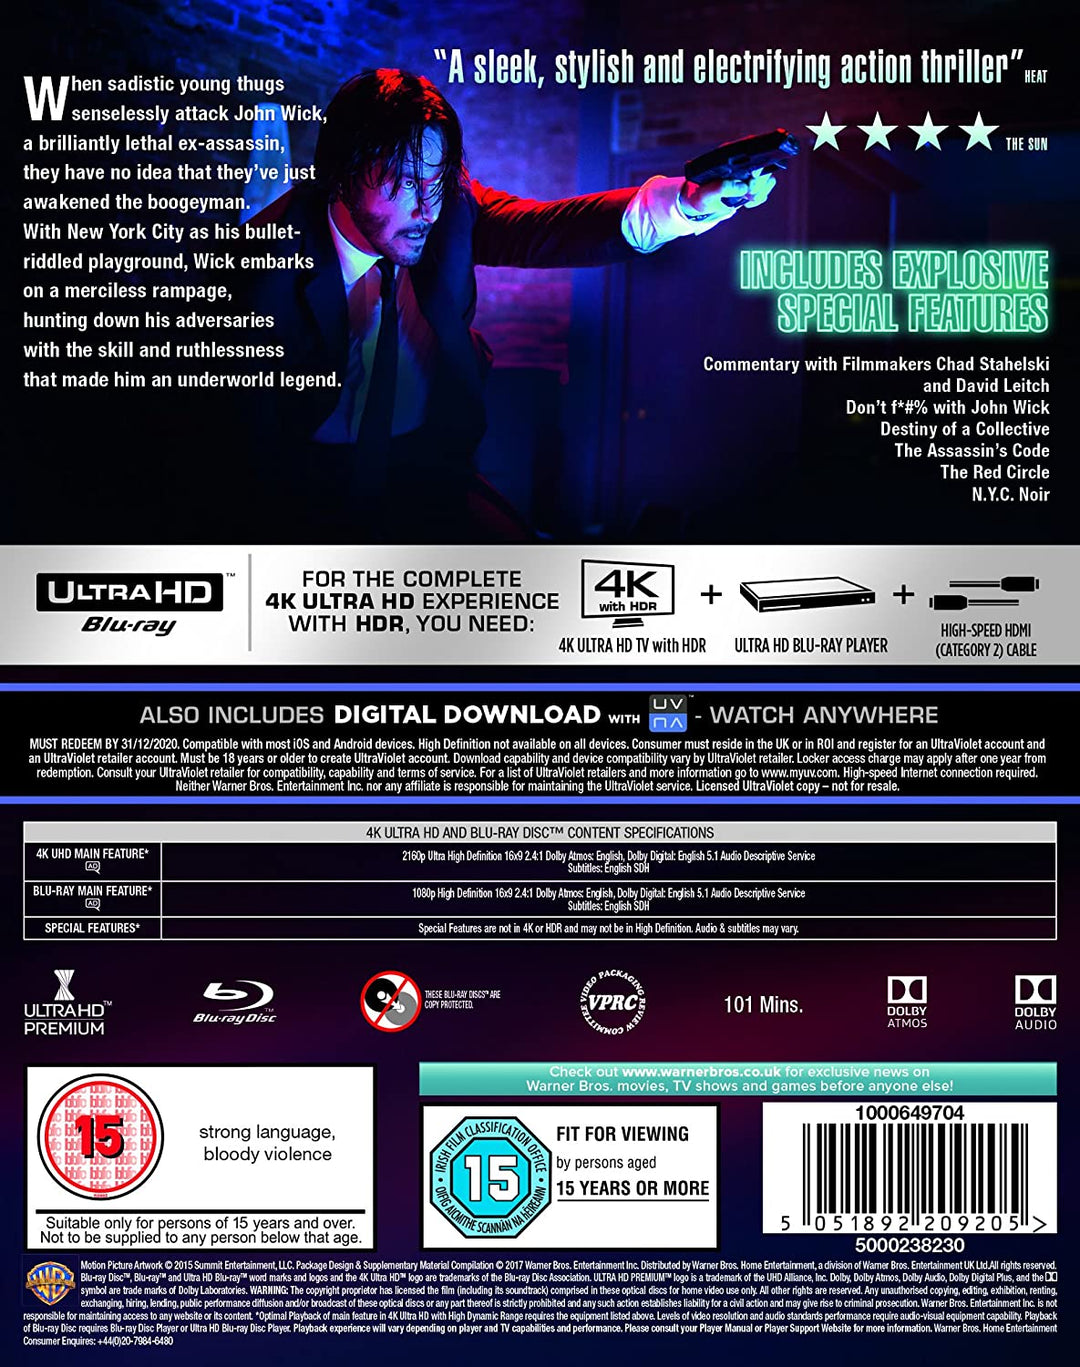 John Wick [4K Ultra HD] [2015] [2017] – Action/Neo-Noir [Blu-ray]